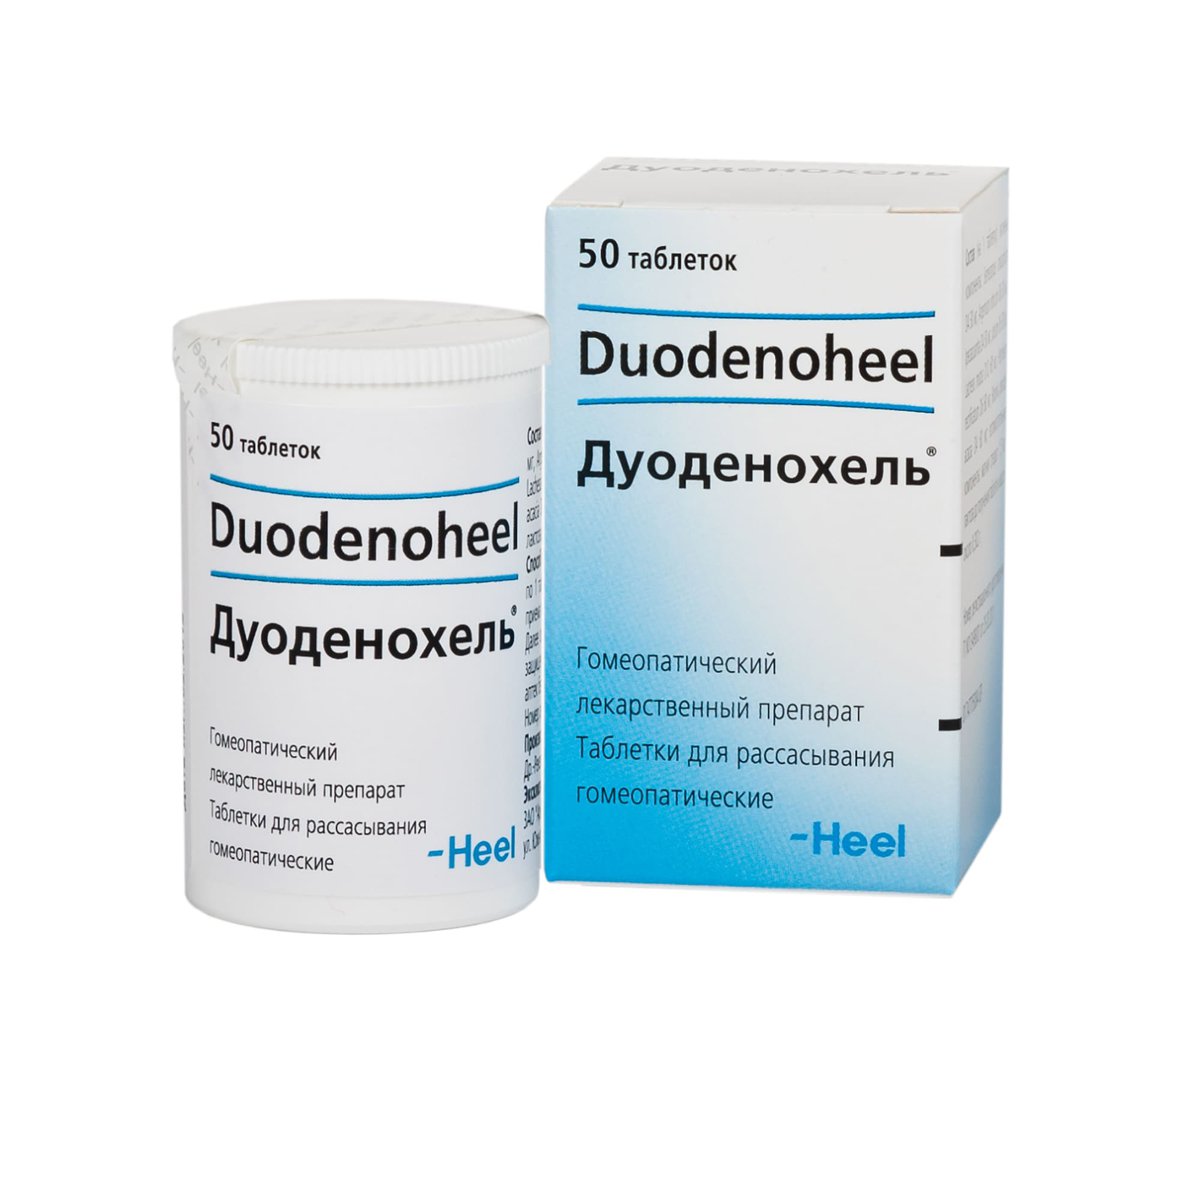 Гомеопатия Heel Дуоденохель (Duodenoheel) Таблетки для рассасывания для .